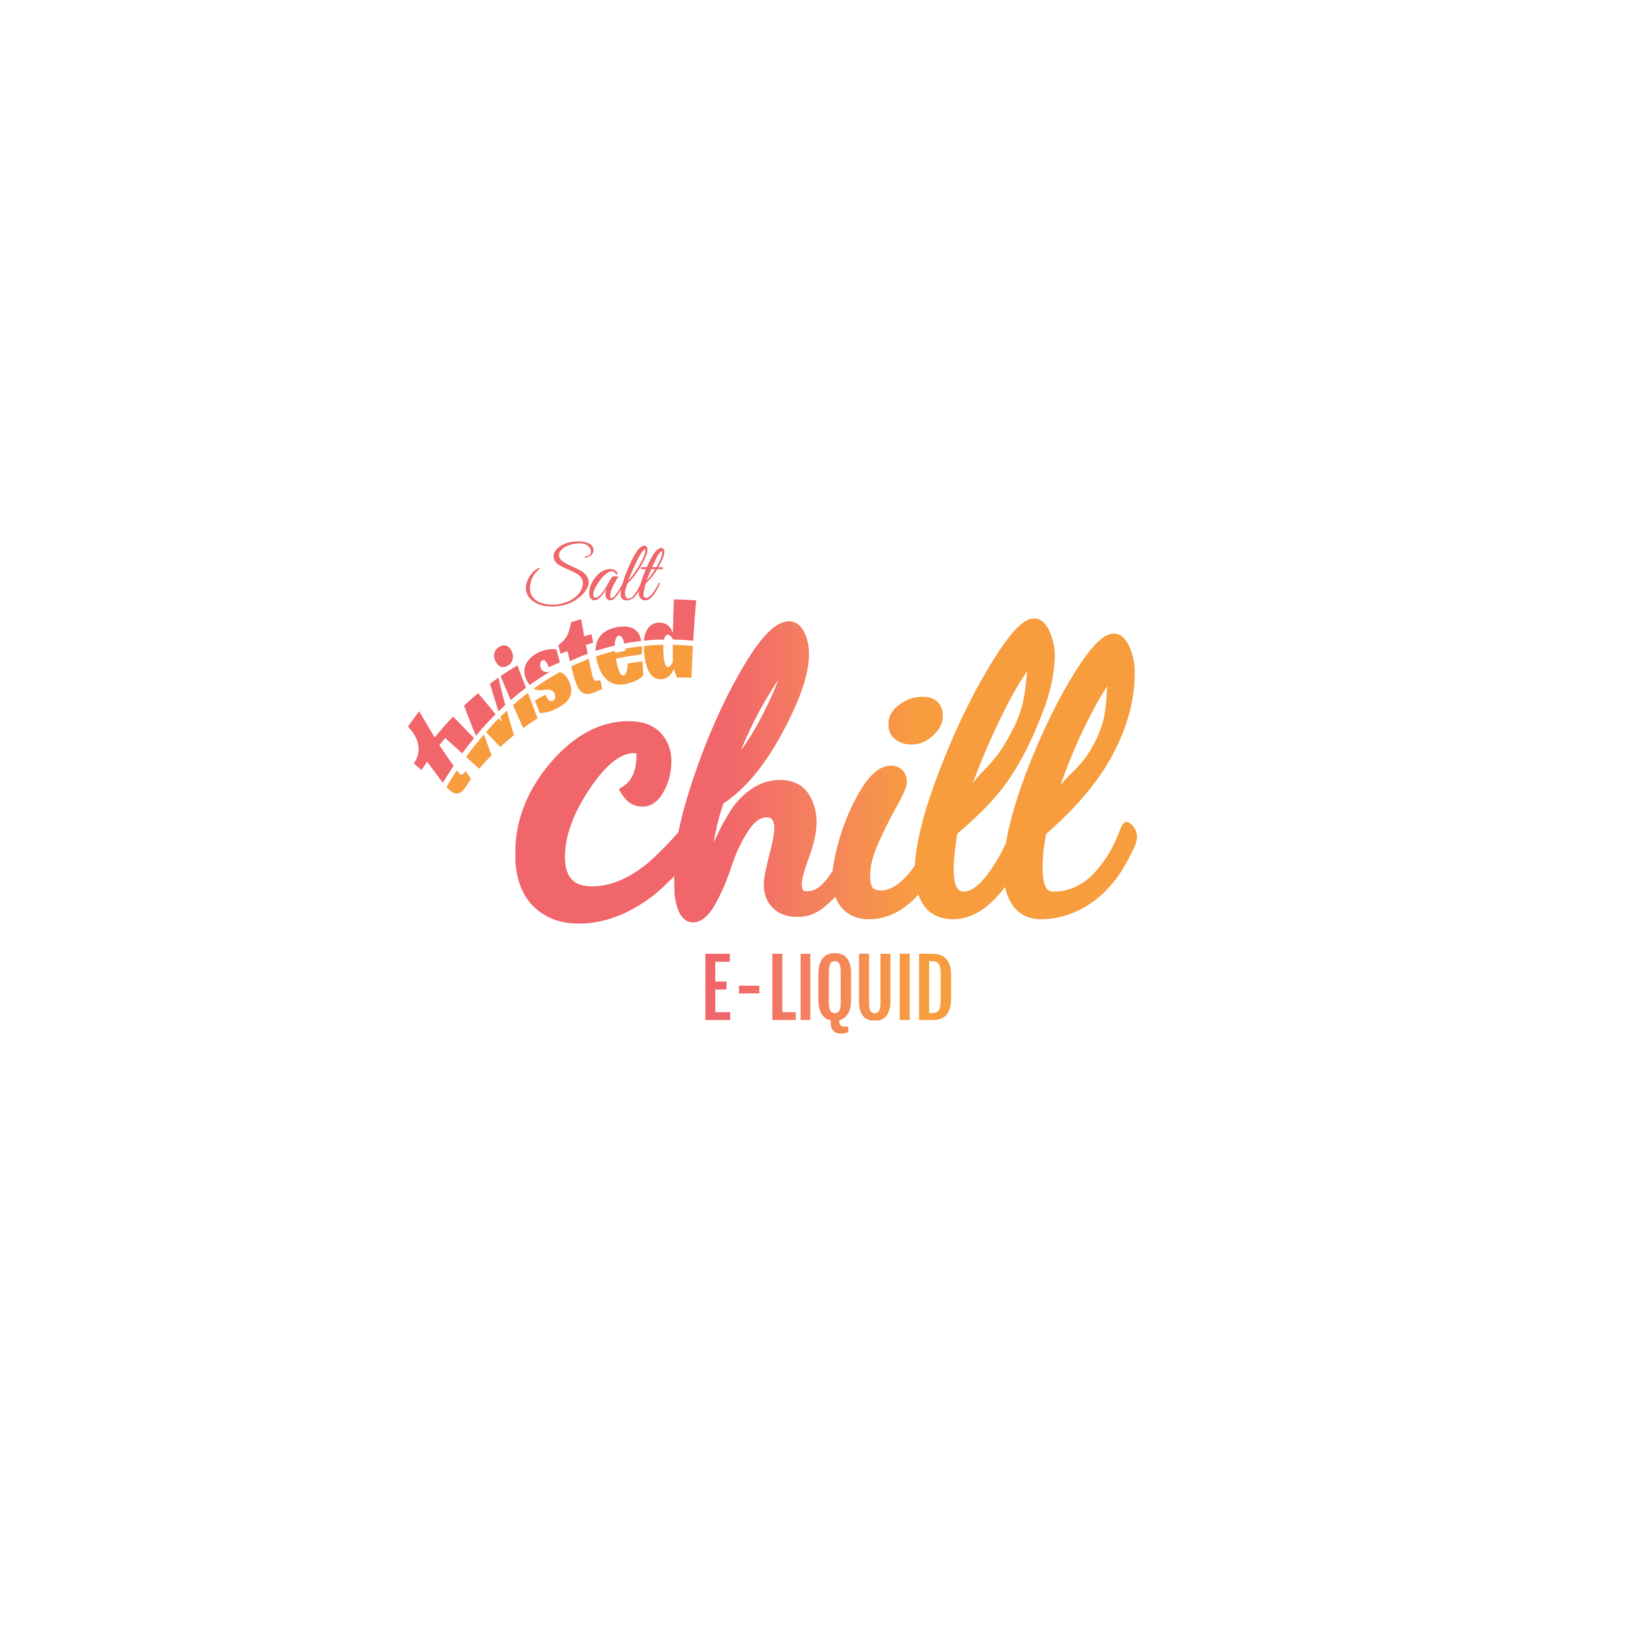 CHILL Chill - SALT NICOTINE